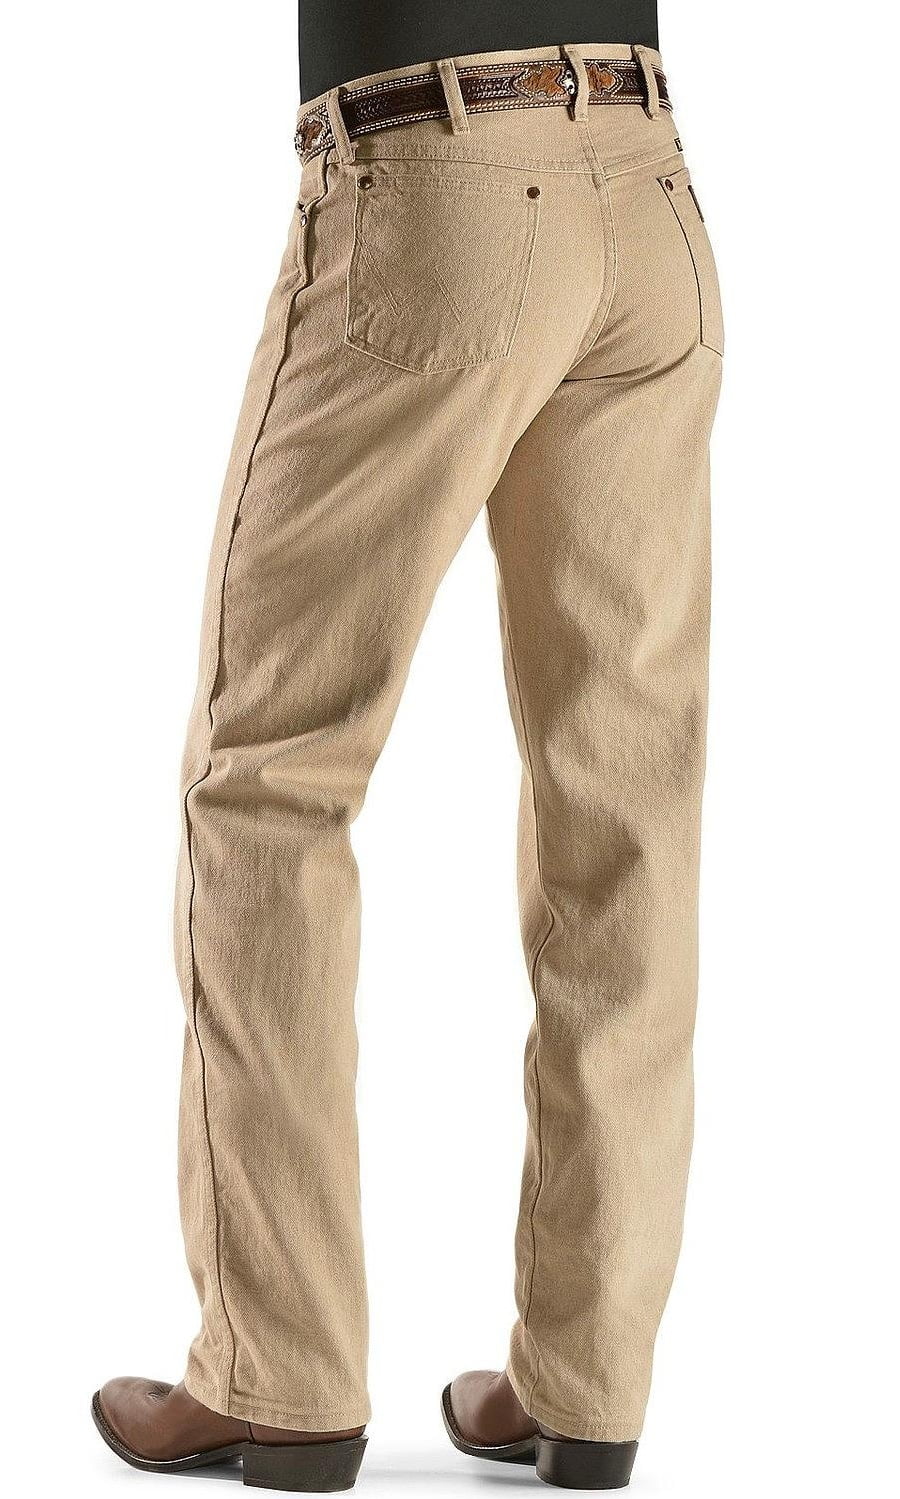 wrangler 13mwz cowboy cut rigid original fit jeans